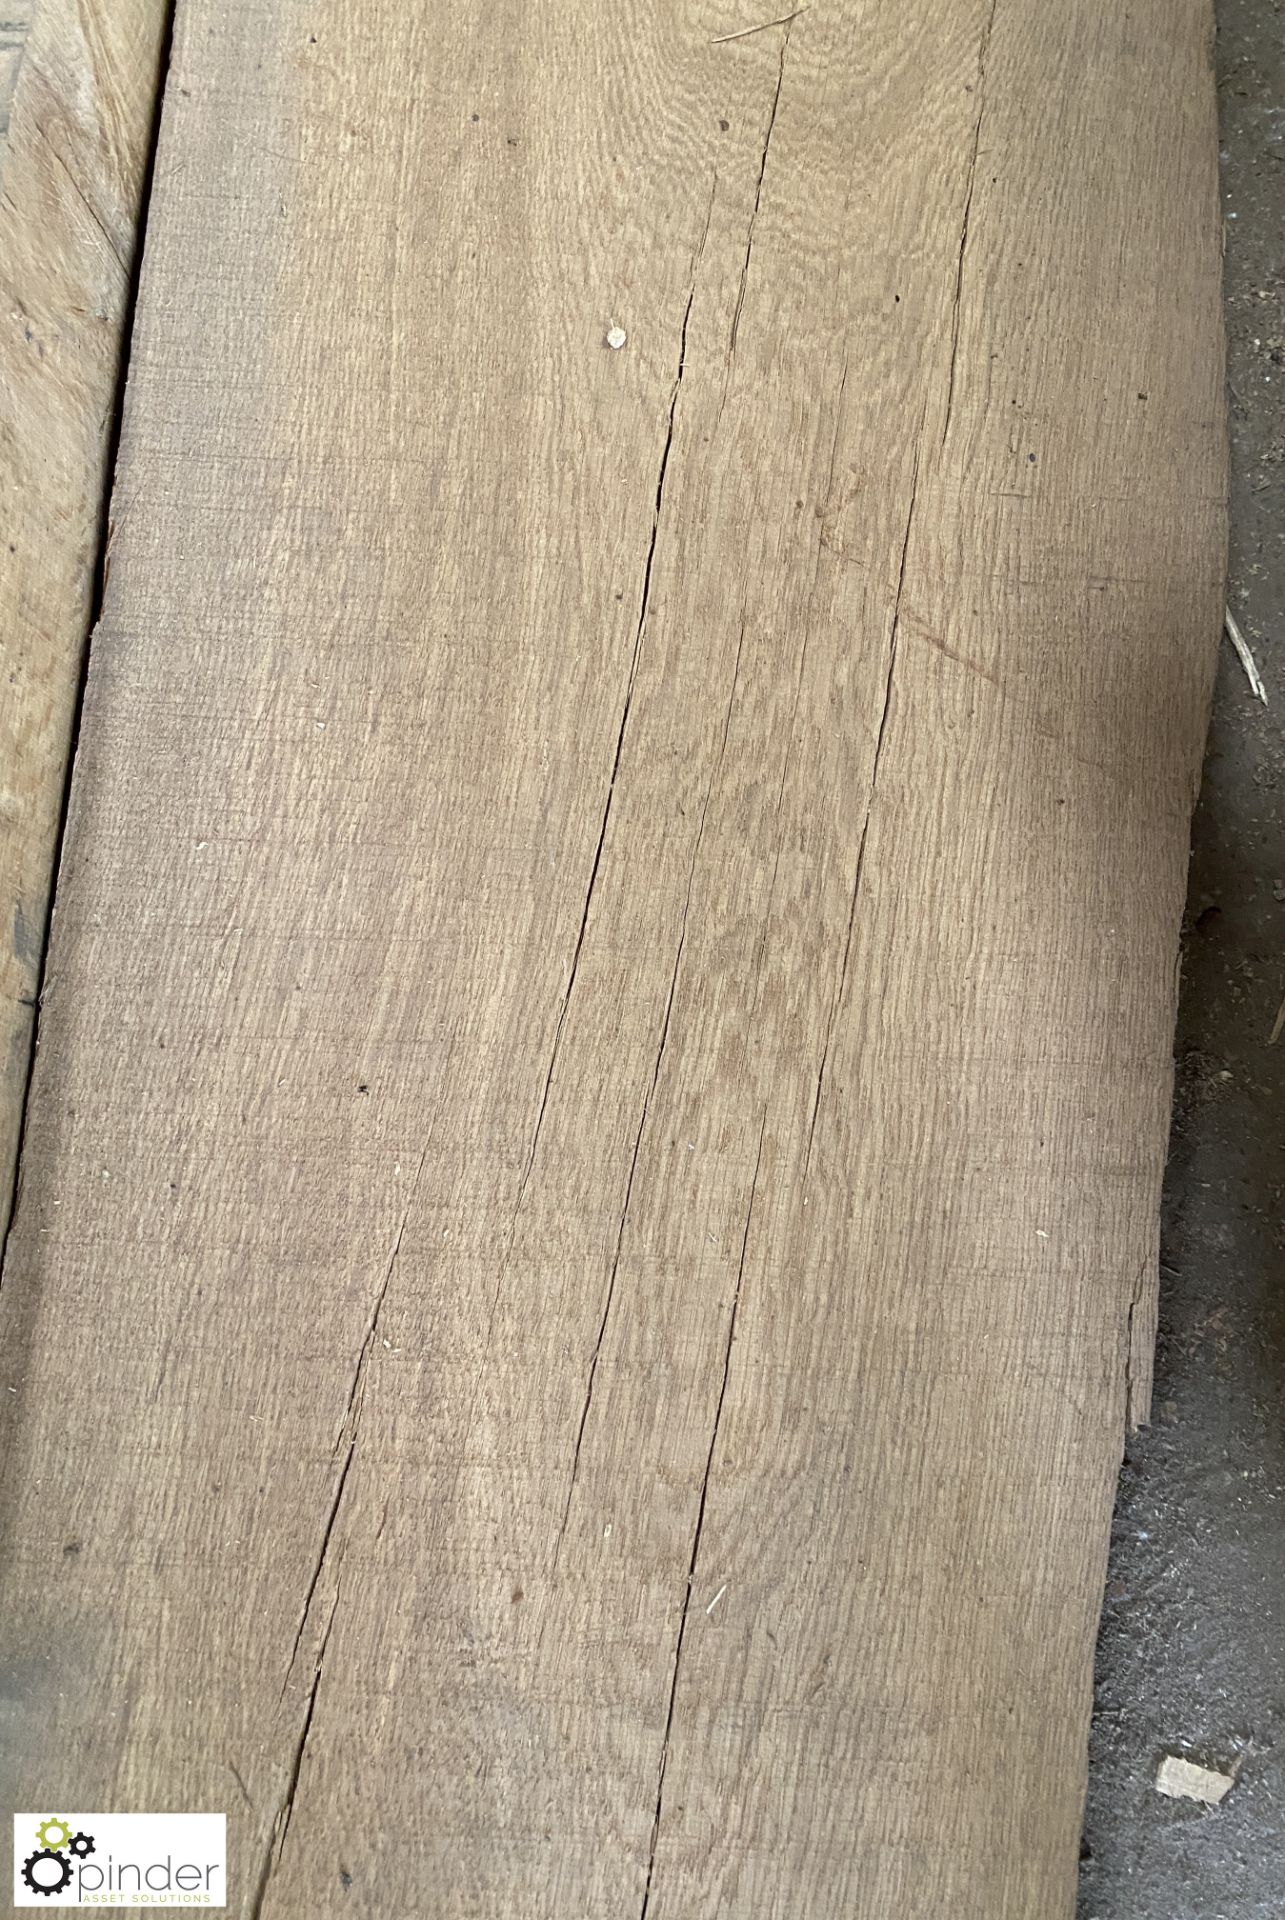 Air dried Oak Board, 6200mm x 370mm x 60mm - Image 3 of 7